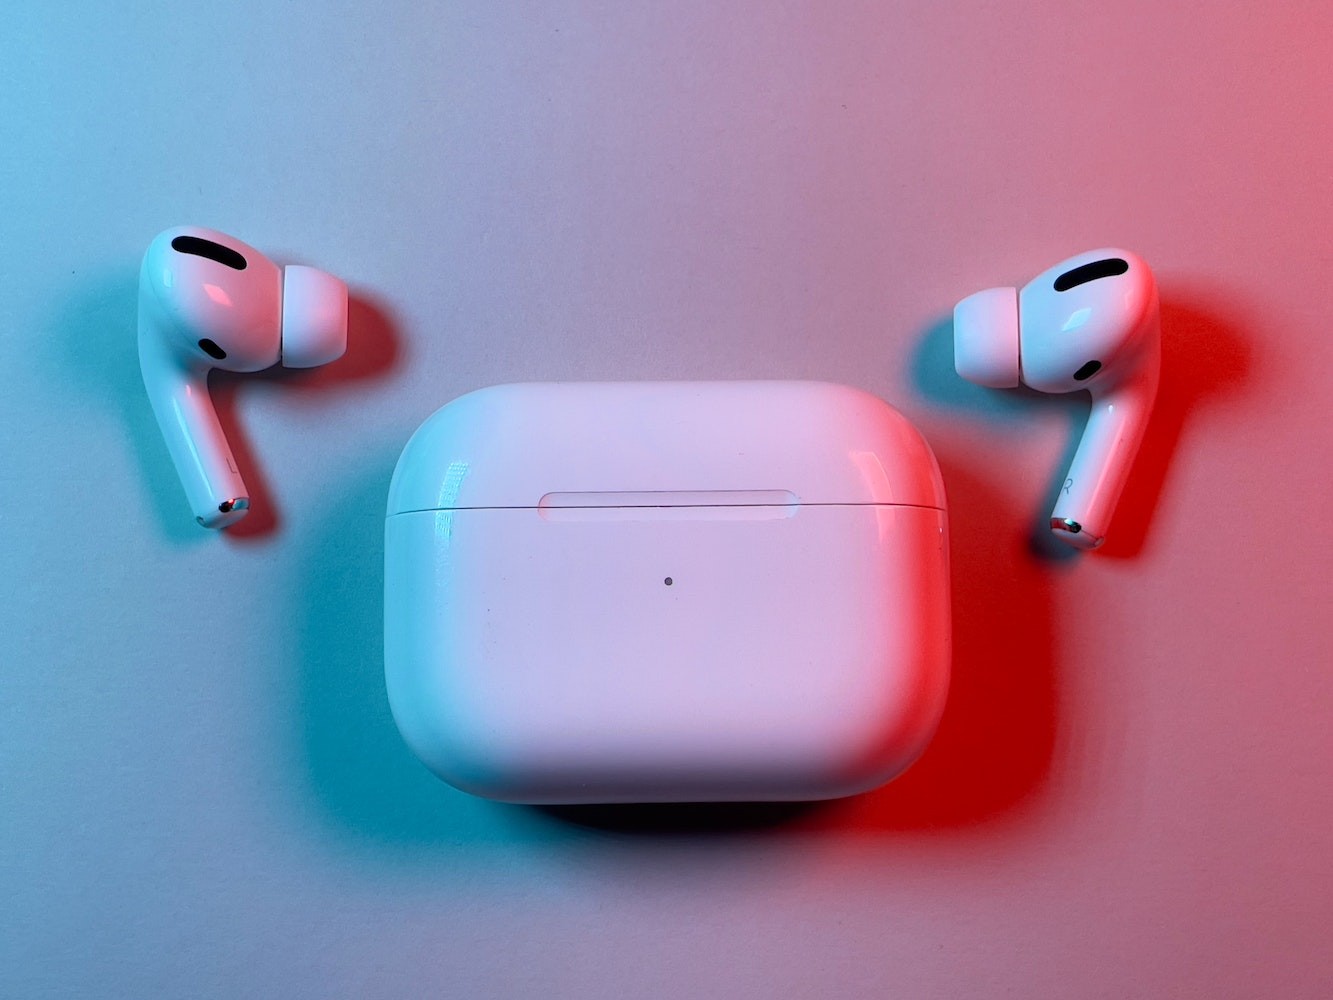 Liệu Apple Sẽ Đổi Cổng Sạc Của AirPod Sang USB C Trong Năm 2023?